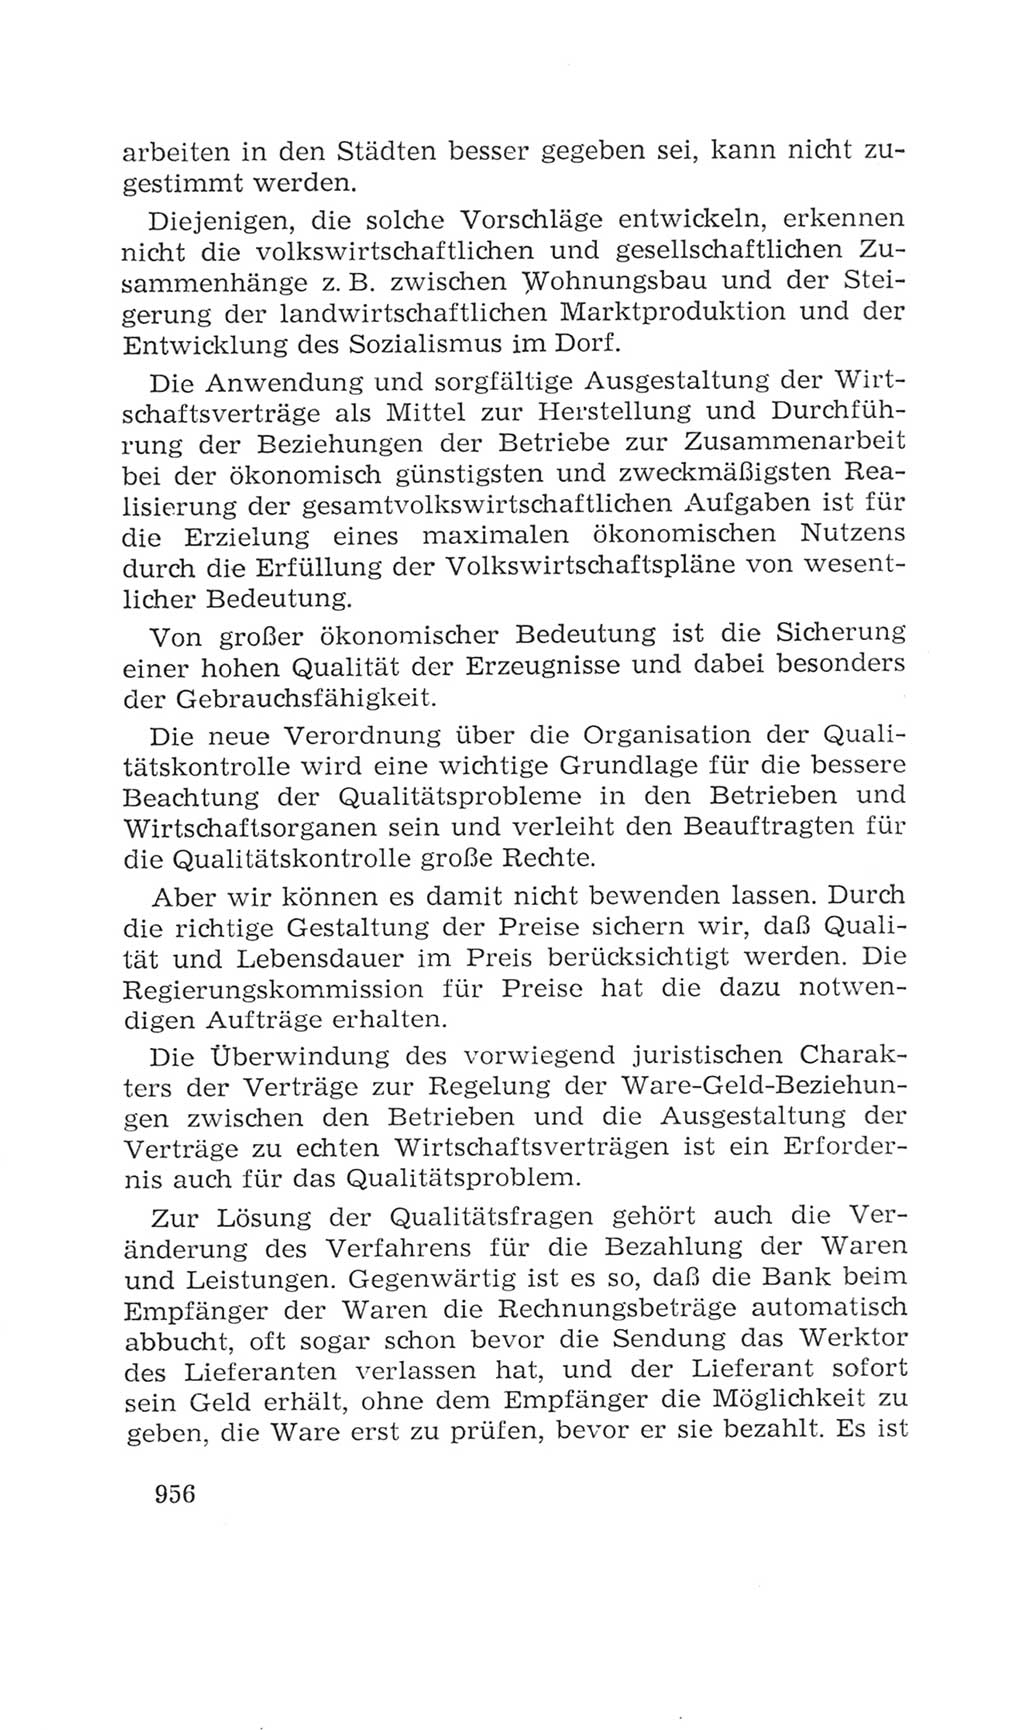 Volkskammer (VK) der Deutschen Demokratischen Republik (DDR), 4. Wahlperiode 1963-1967, Seite 956 (VK. DDR 4. WP. 1963-1967, S. 956)